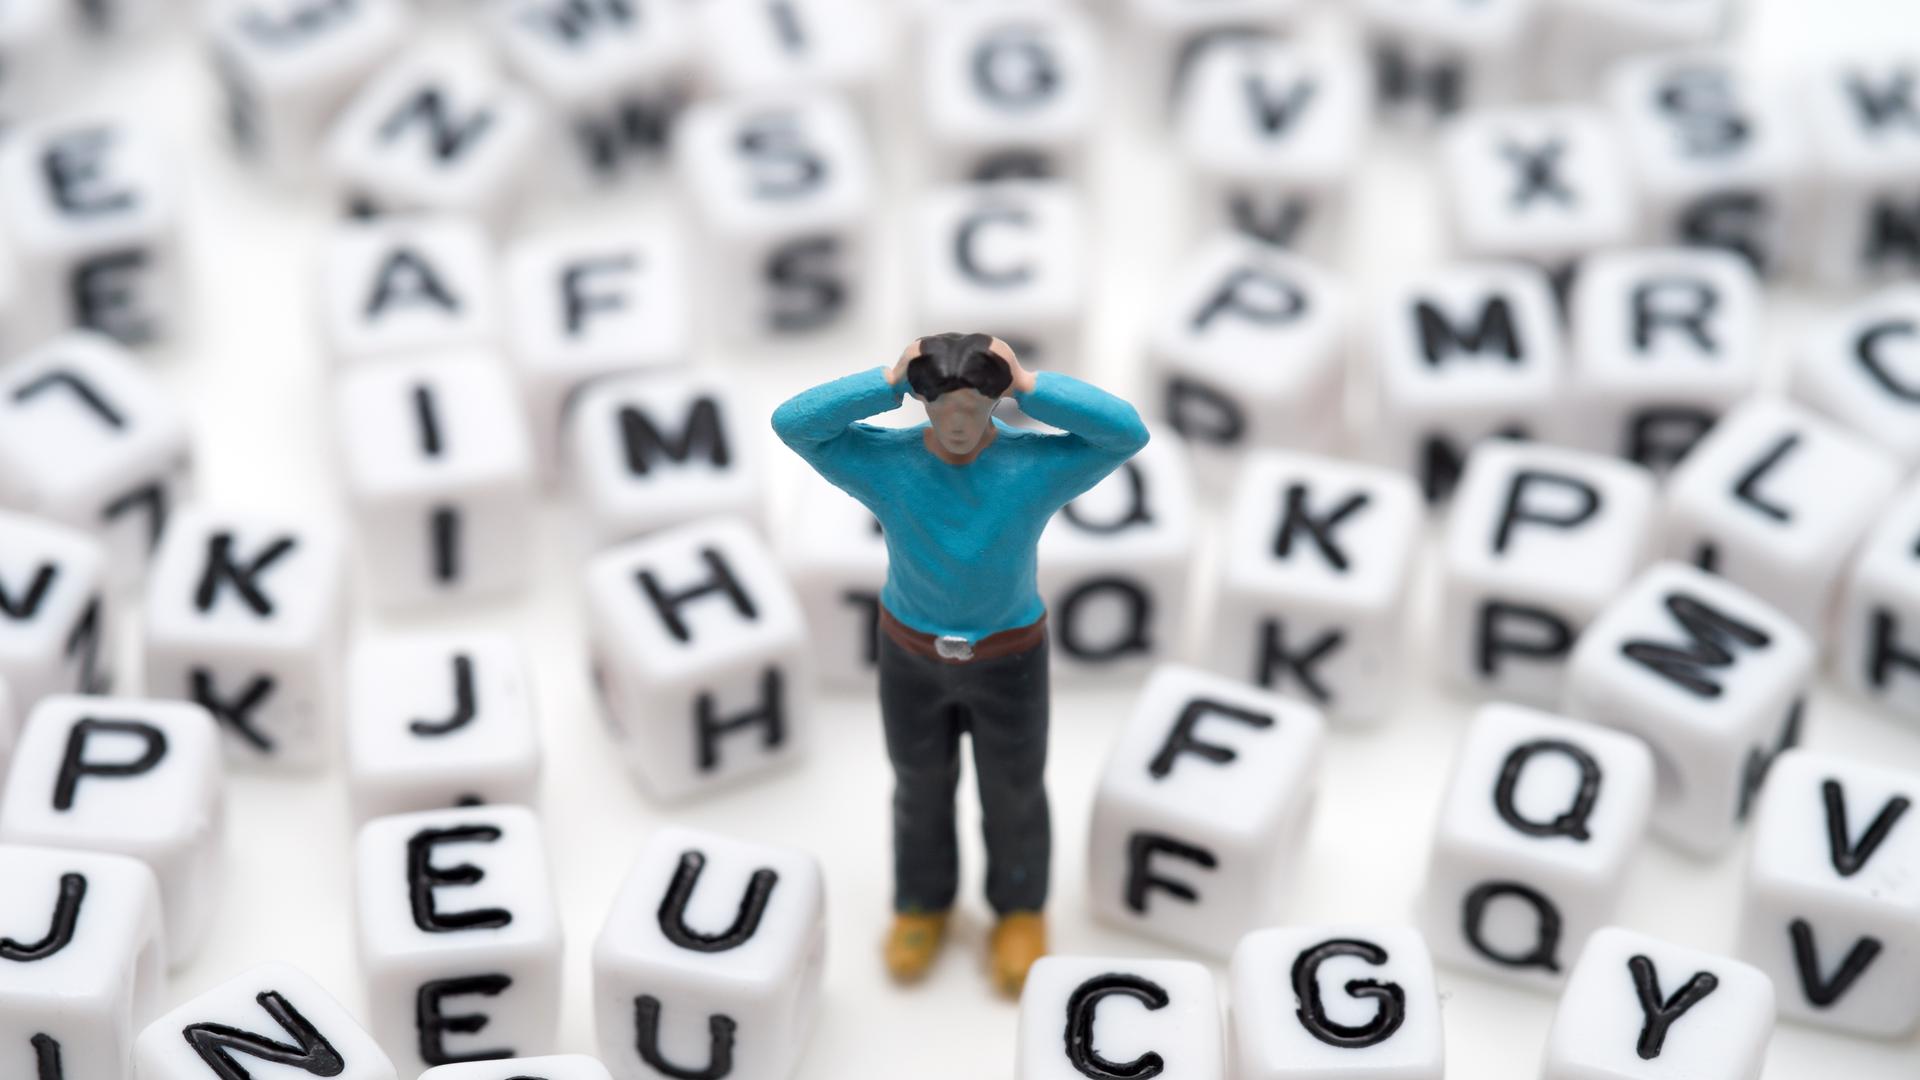 Eine kleine Spielfigur steht, die Hände an den Kopf gehoben, zwischen lauter Buchstabenwürfeln 